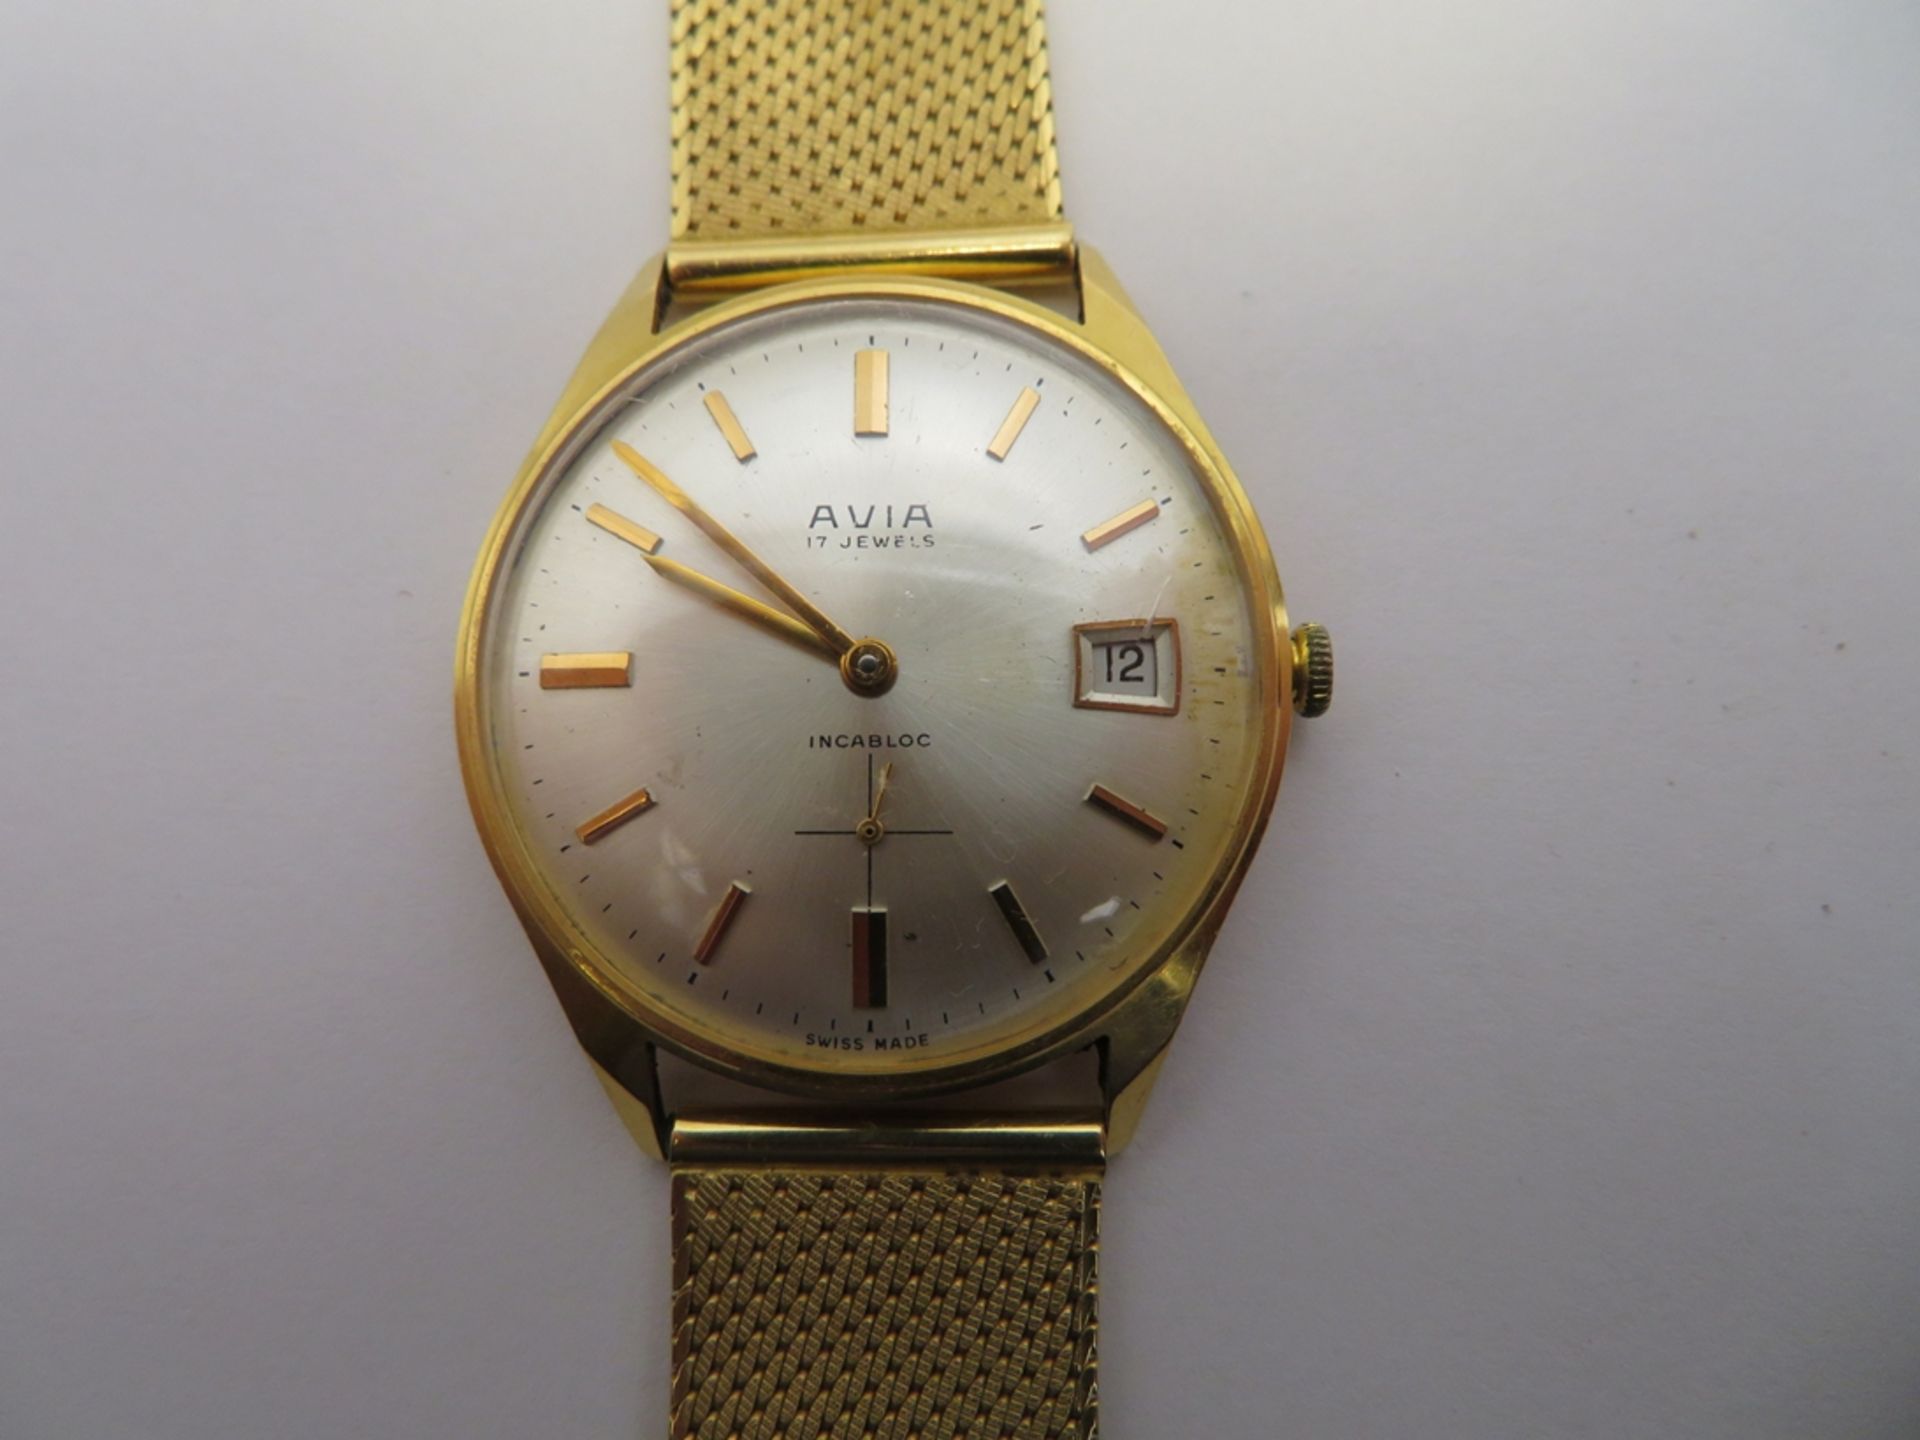 HAU, Avia, 1960/70er Jahre, Gehäuse und Band 750er Gelbgold, gepunzt, 59,68 g,